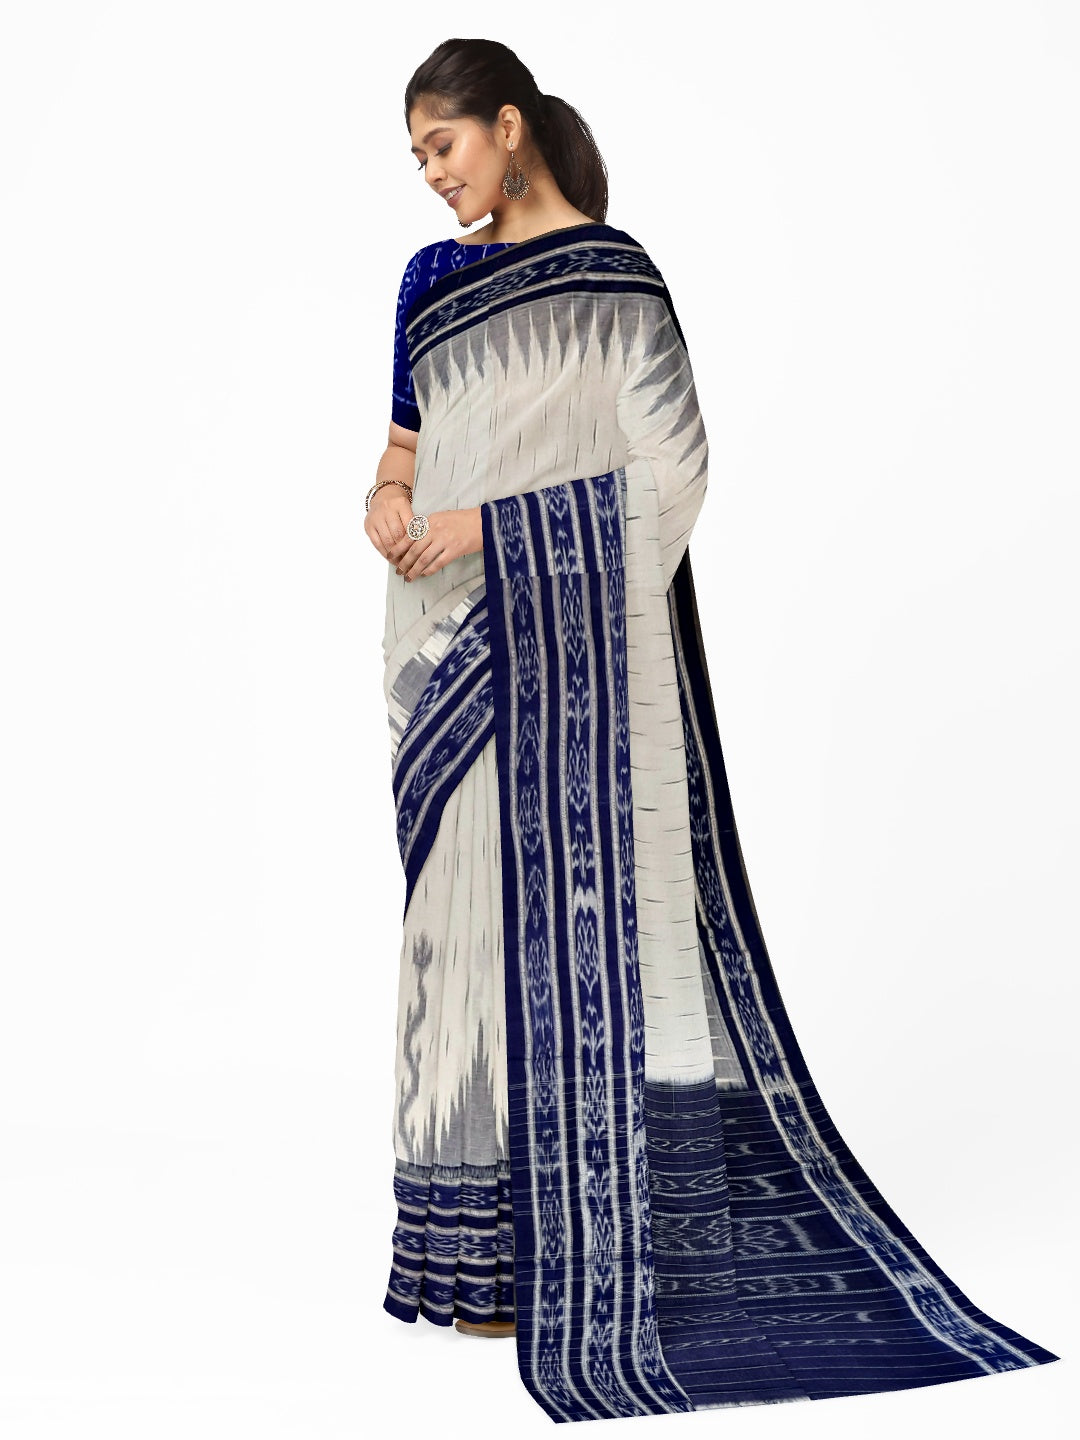 White and Blue Cotton Odisha Ikat saree  with mix match cotton ikat blouse